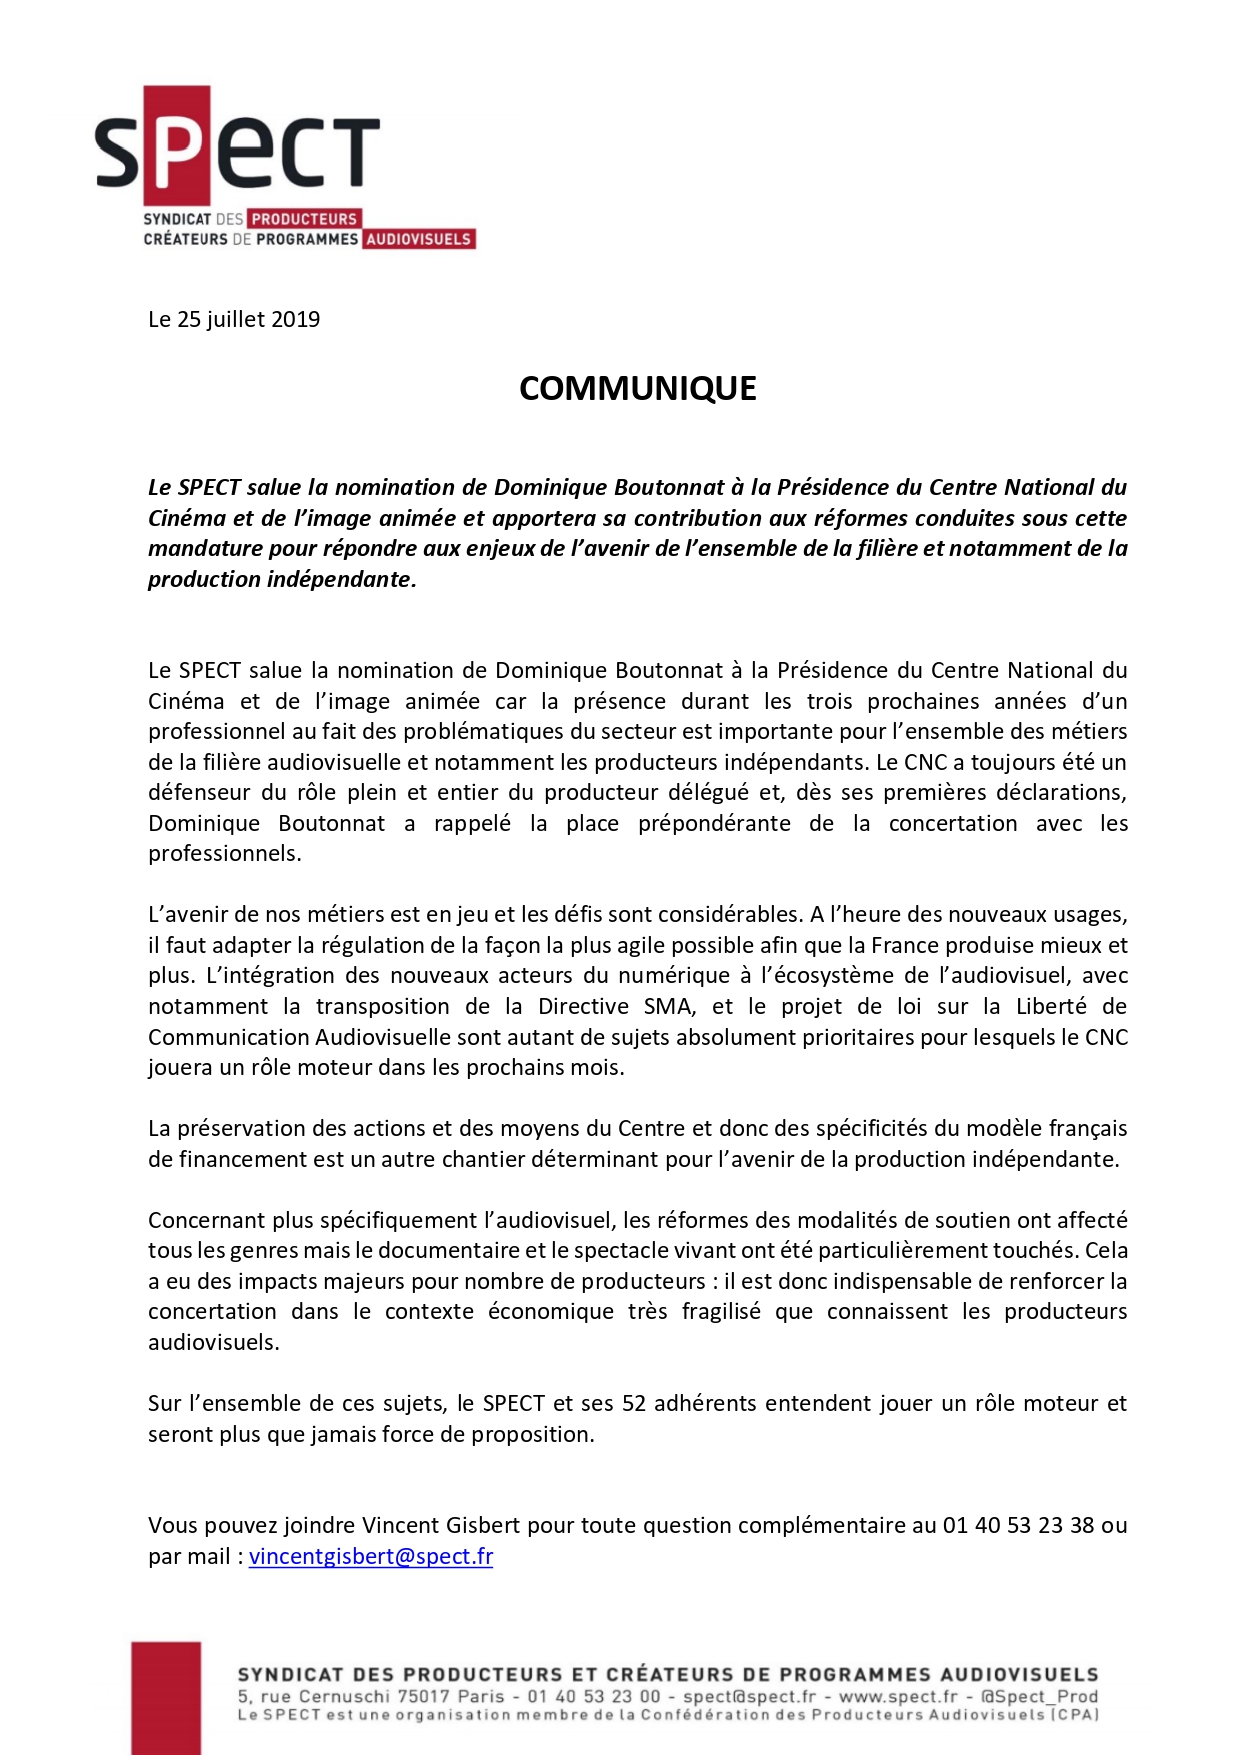 Communiqué Nomination Dominique Boutonnat